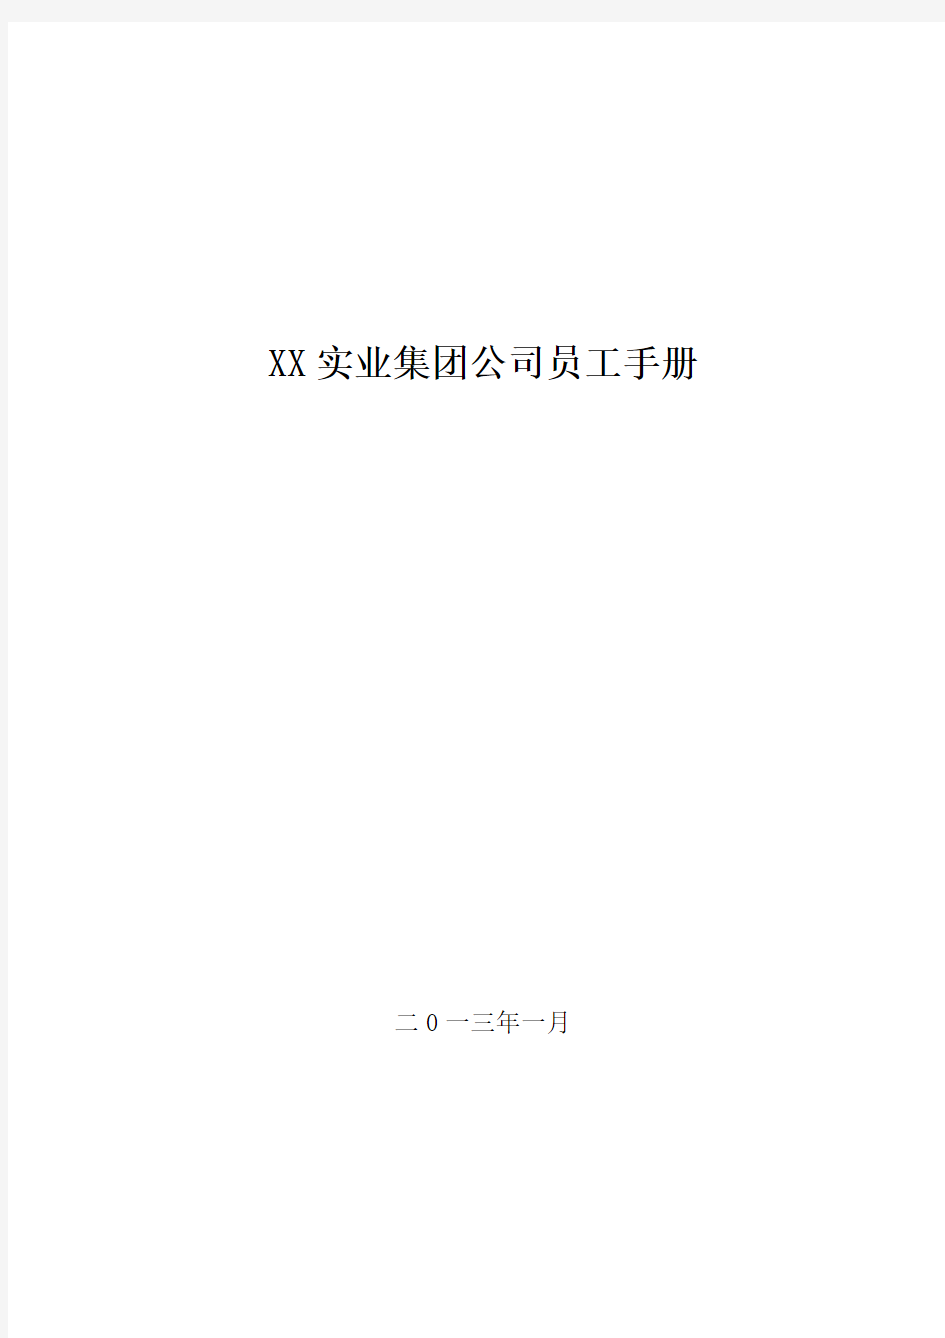 XX实业集团公司员工手册(XXXX新版)